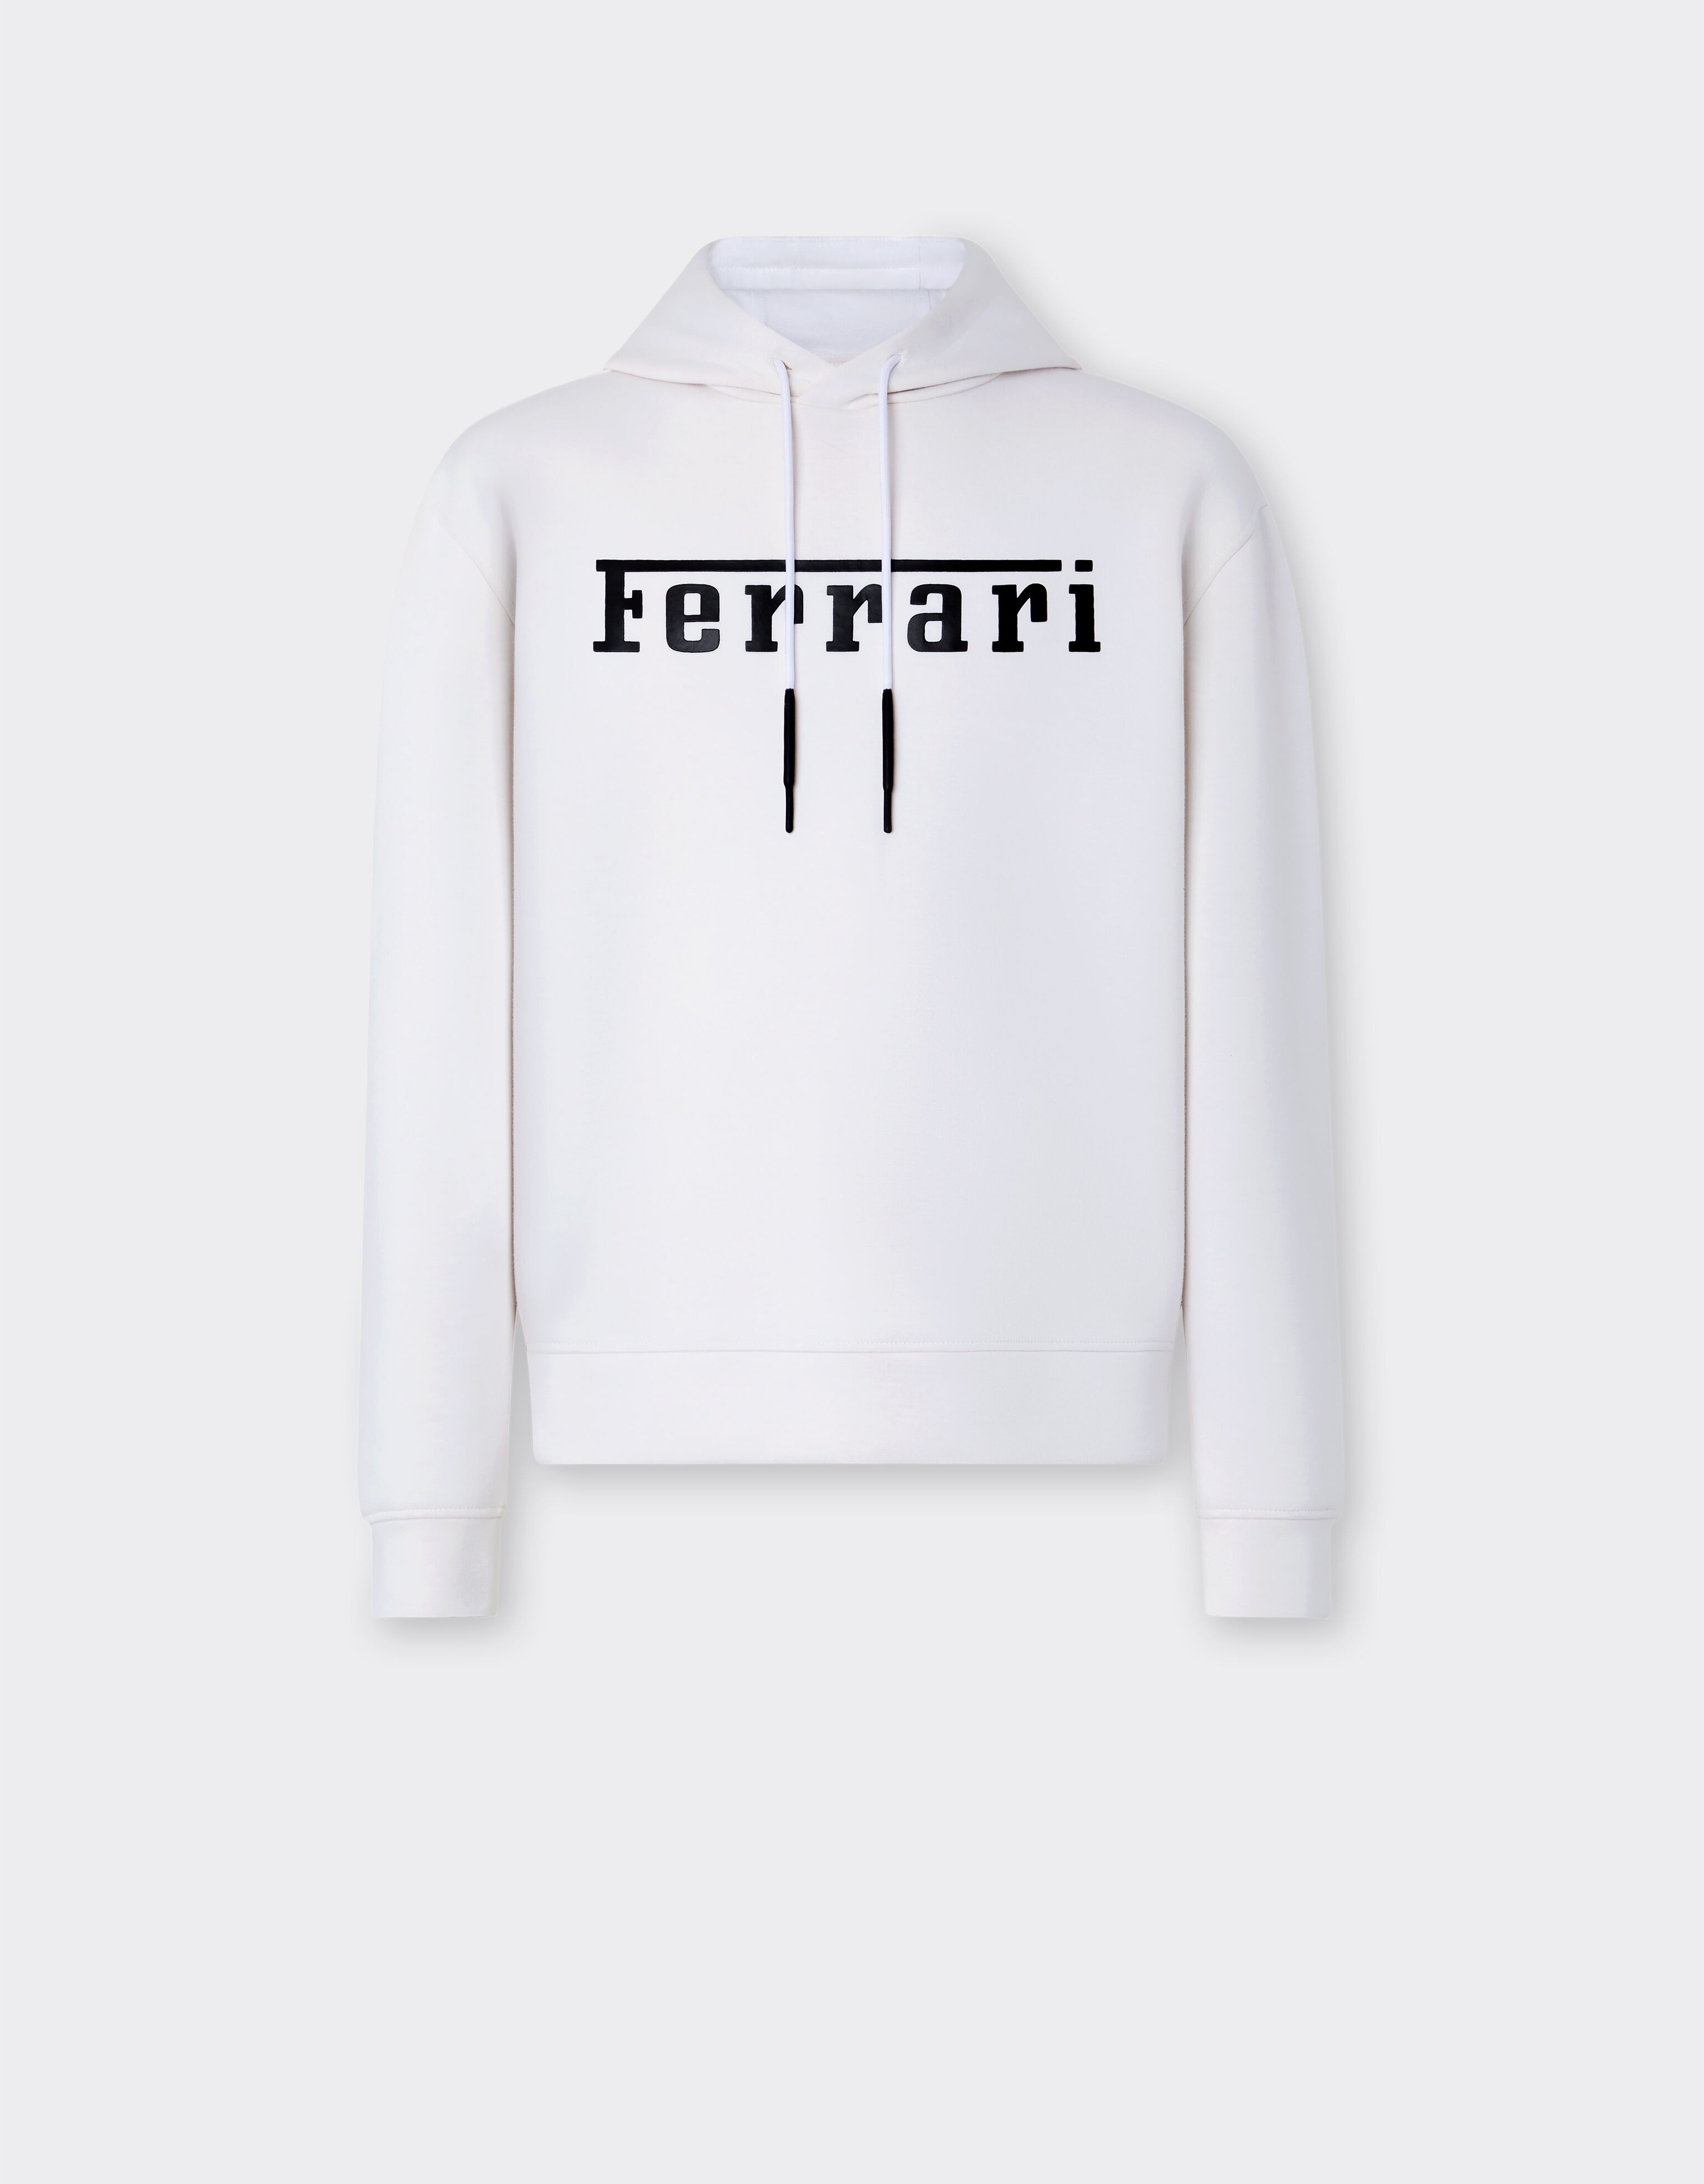 Ferrari Scuba knit sweatshirt with contrast Ferrari logo Optical White 47819f